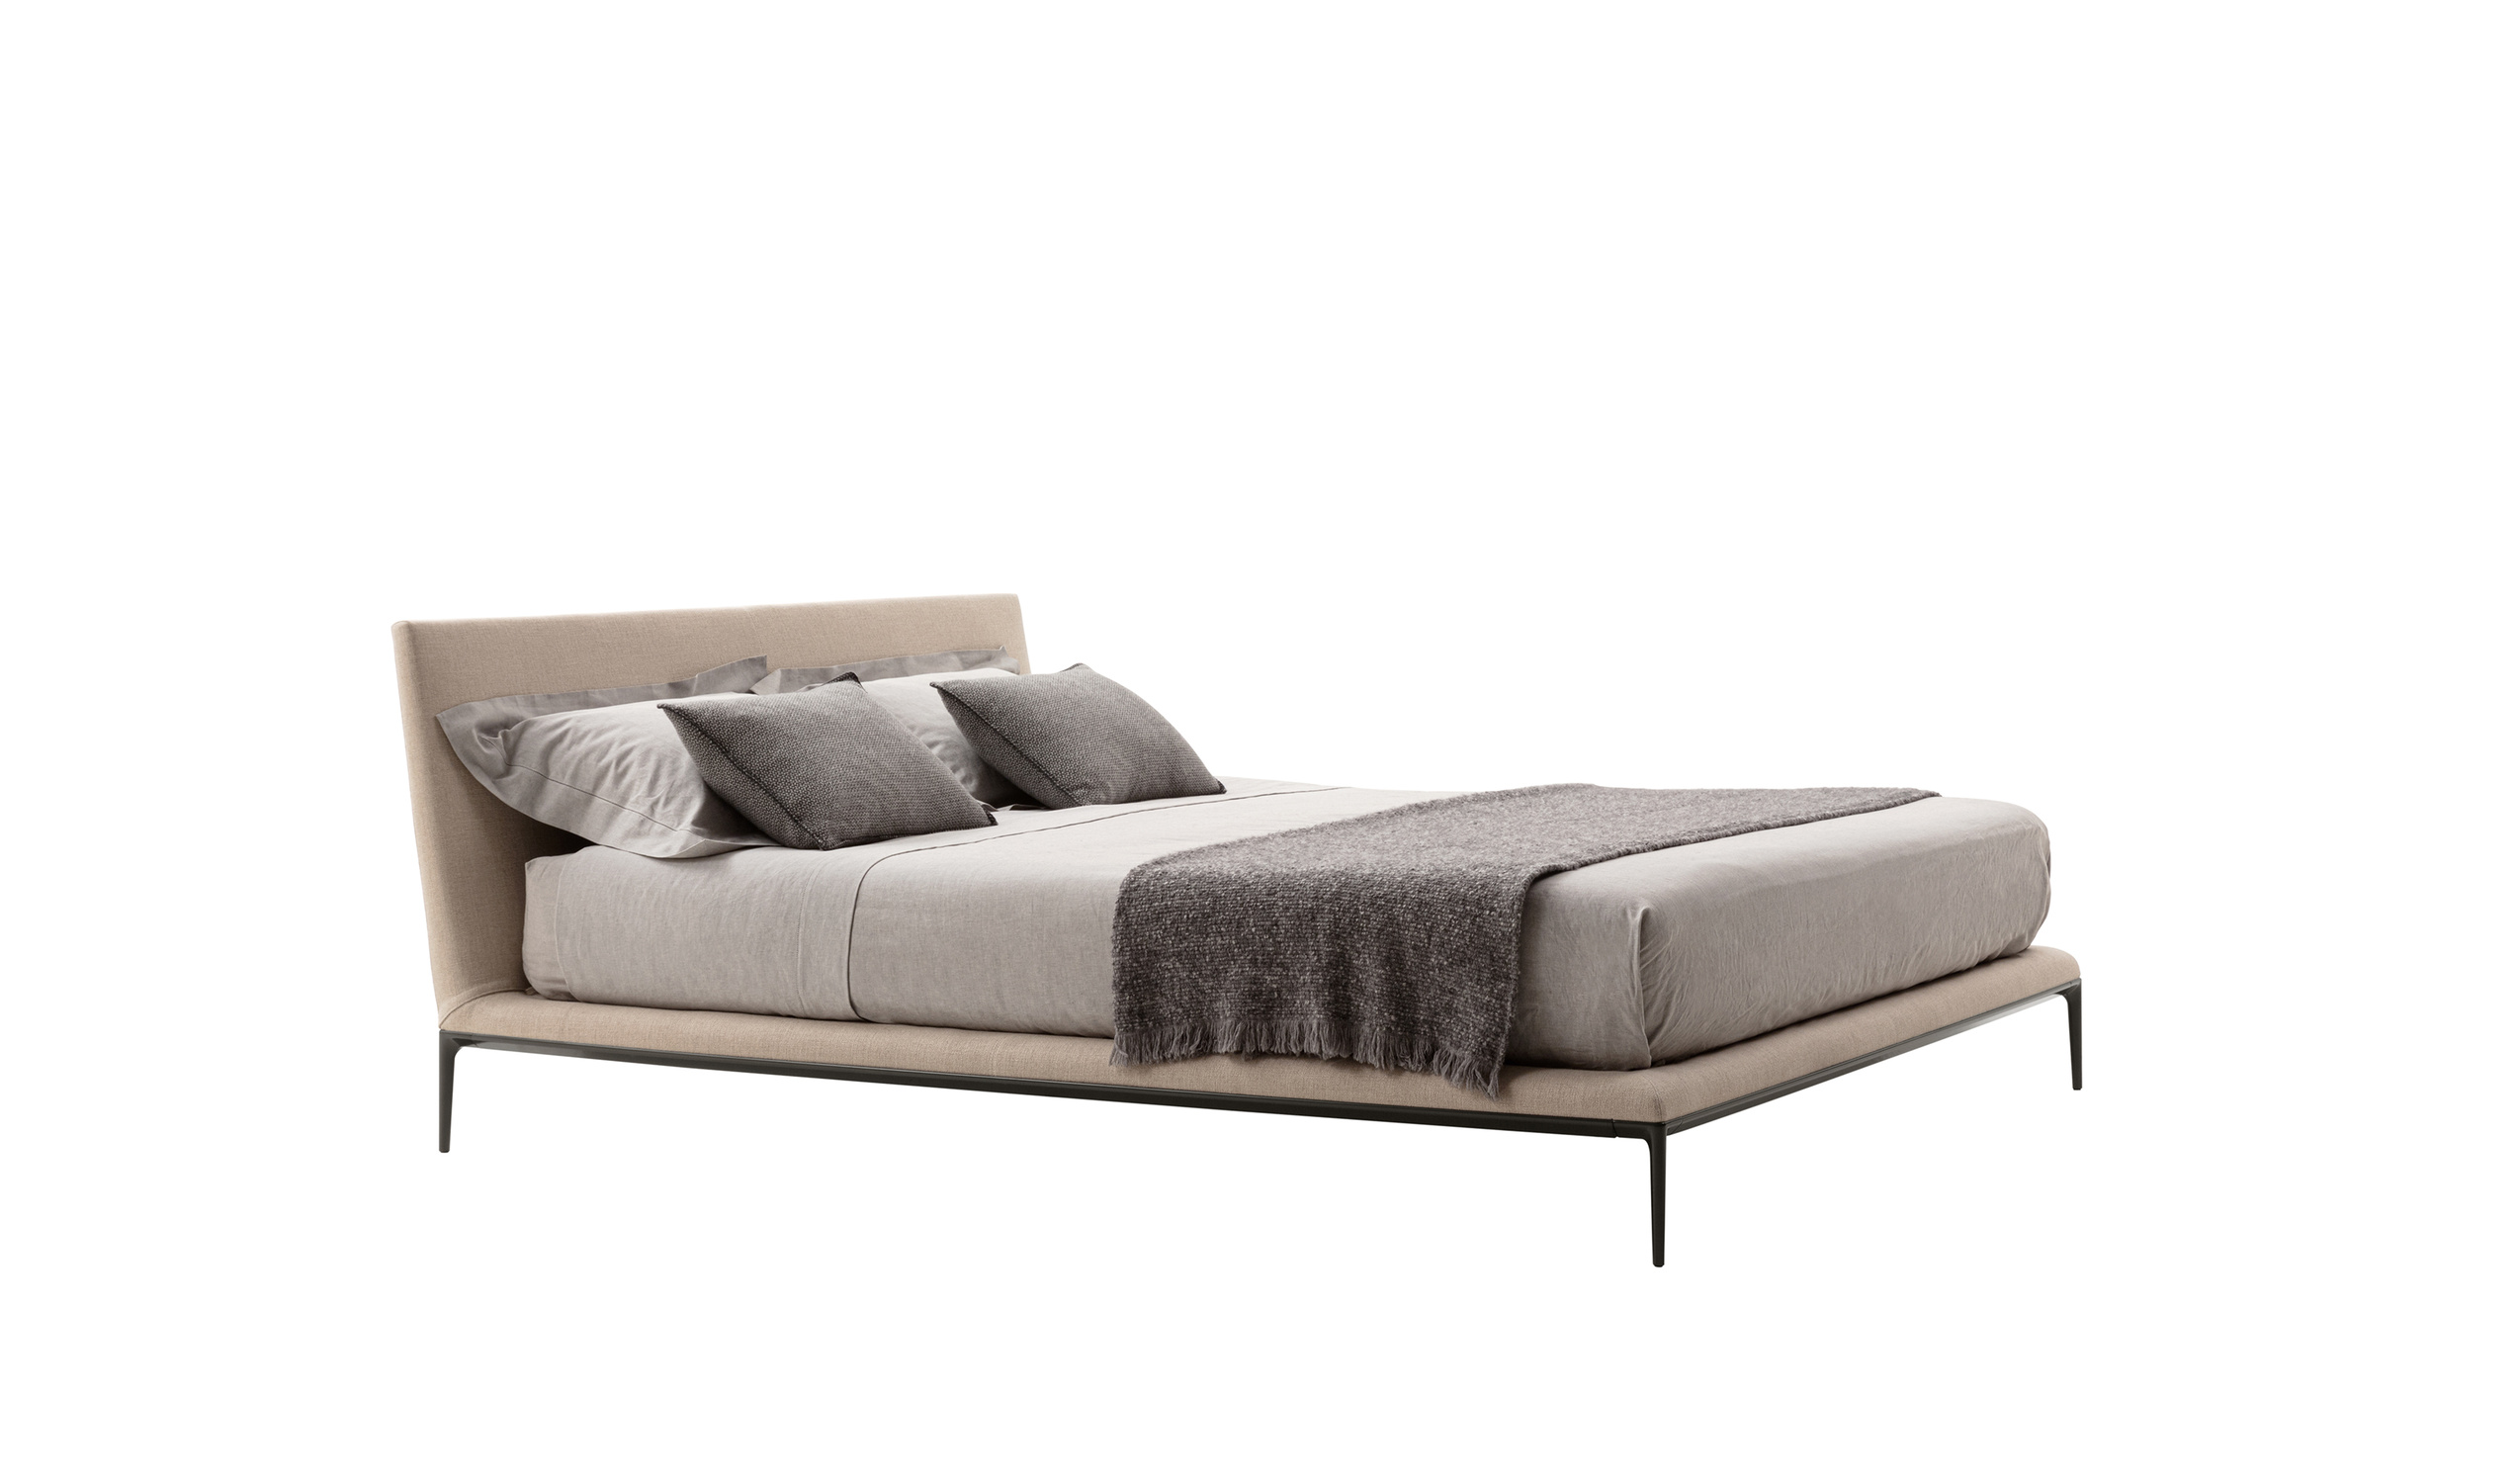 Designer Italian modern beds - B&B Atoll Beds